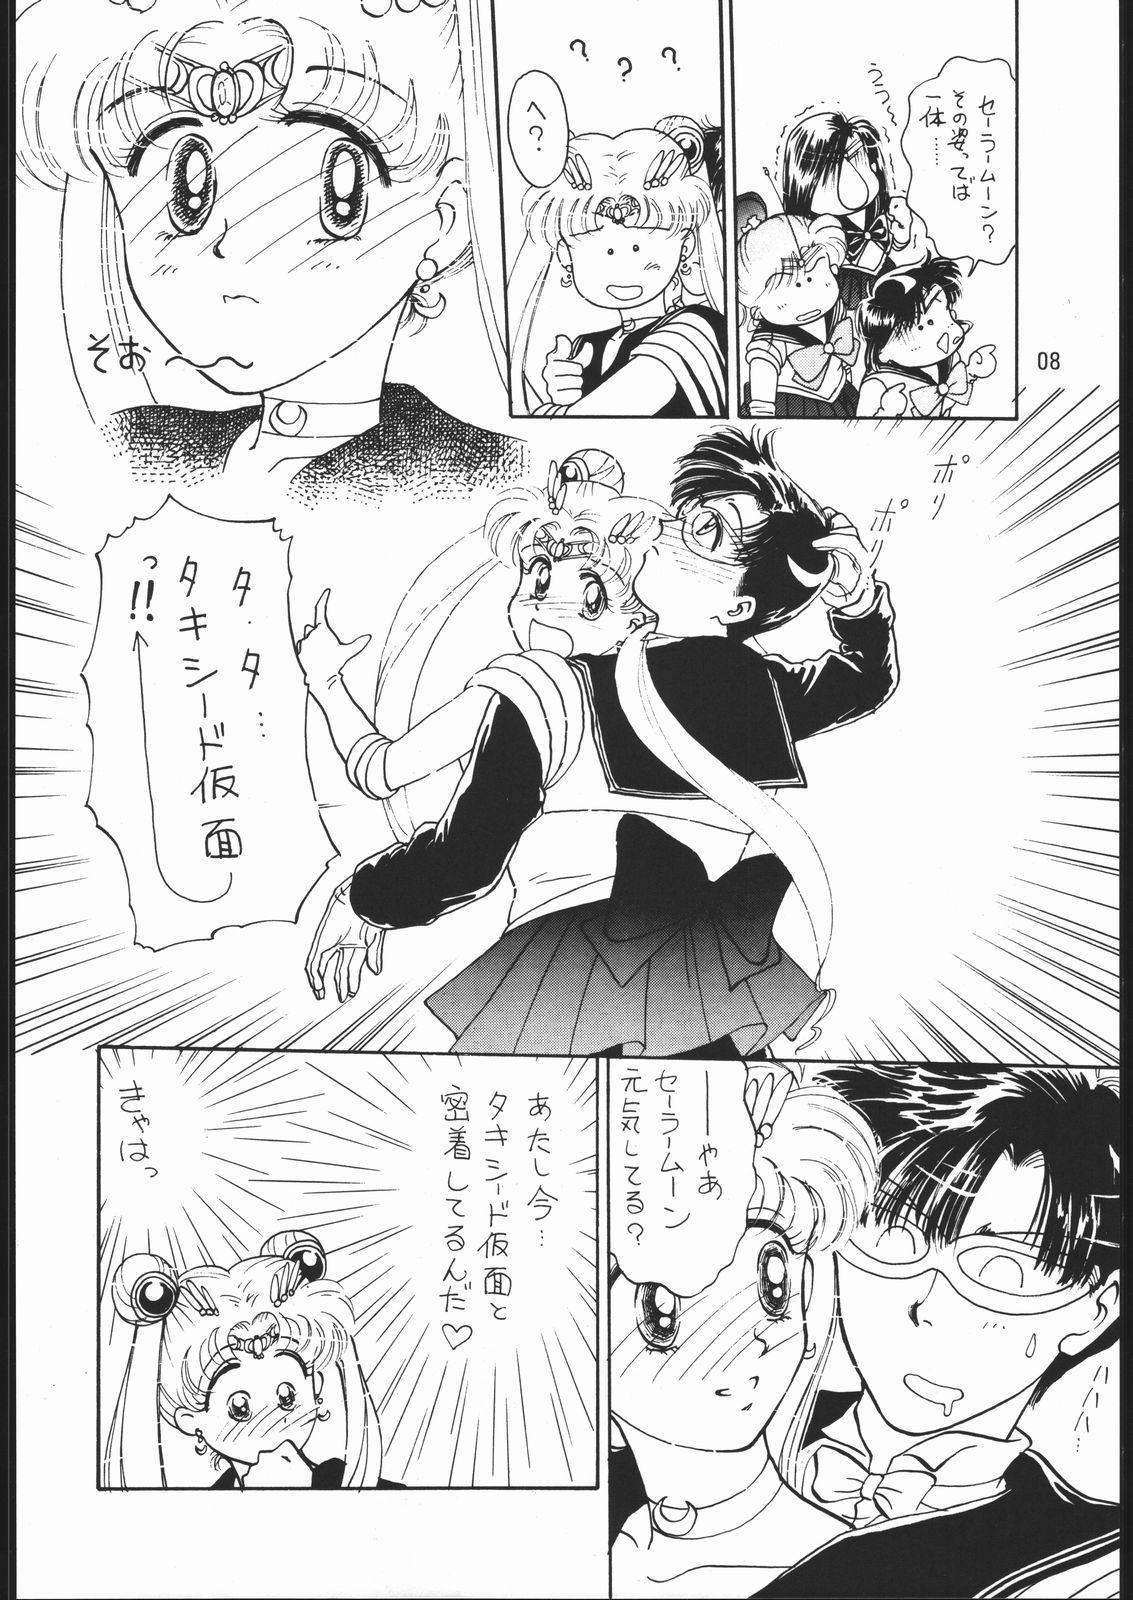 Sucks うさぎがピョン!! - Sailor moon Sucking Cocks - Page 7